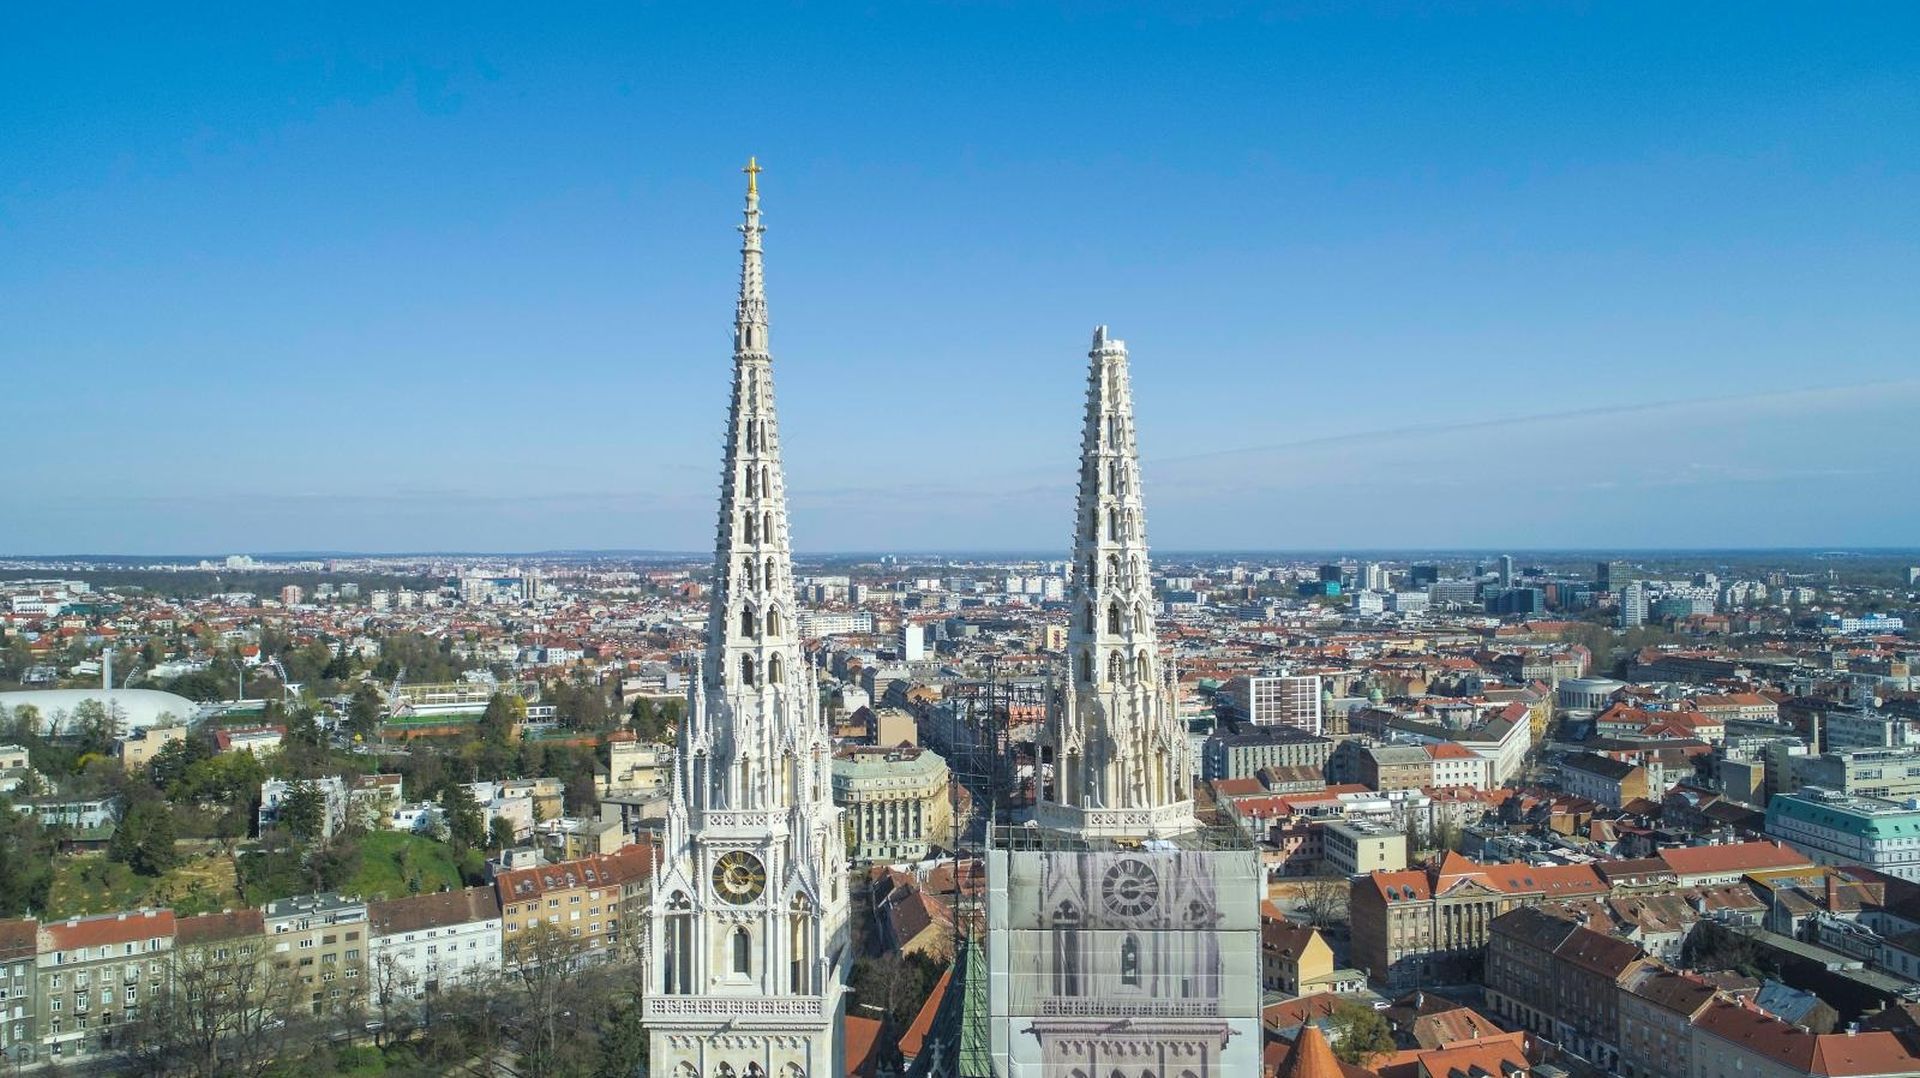 22.03.2020., Zagreb - Fotografija katedrale iz zraka nakon potresa 22. ozujka 2020. u kojemu je ostecen desni toranj i kriz. Photo: PIXSELL